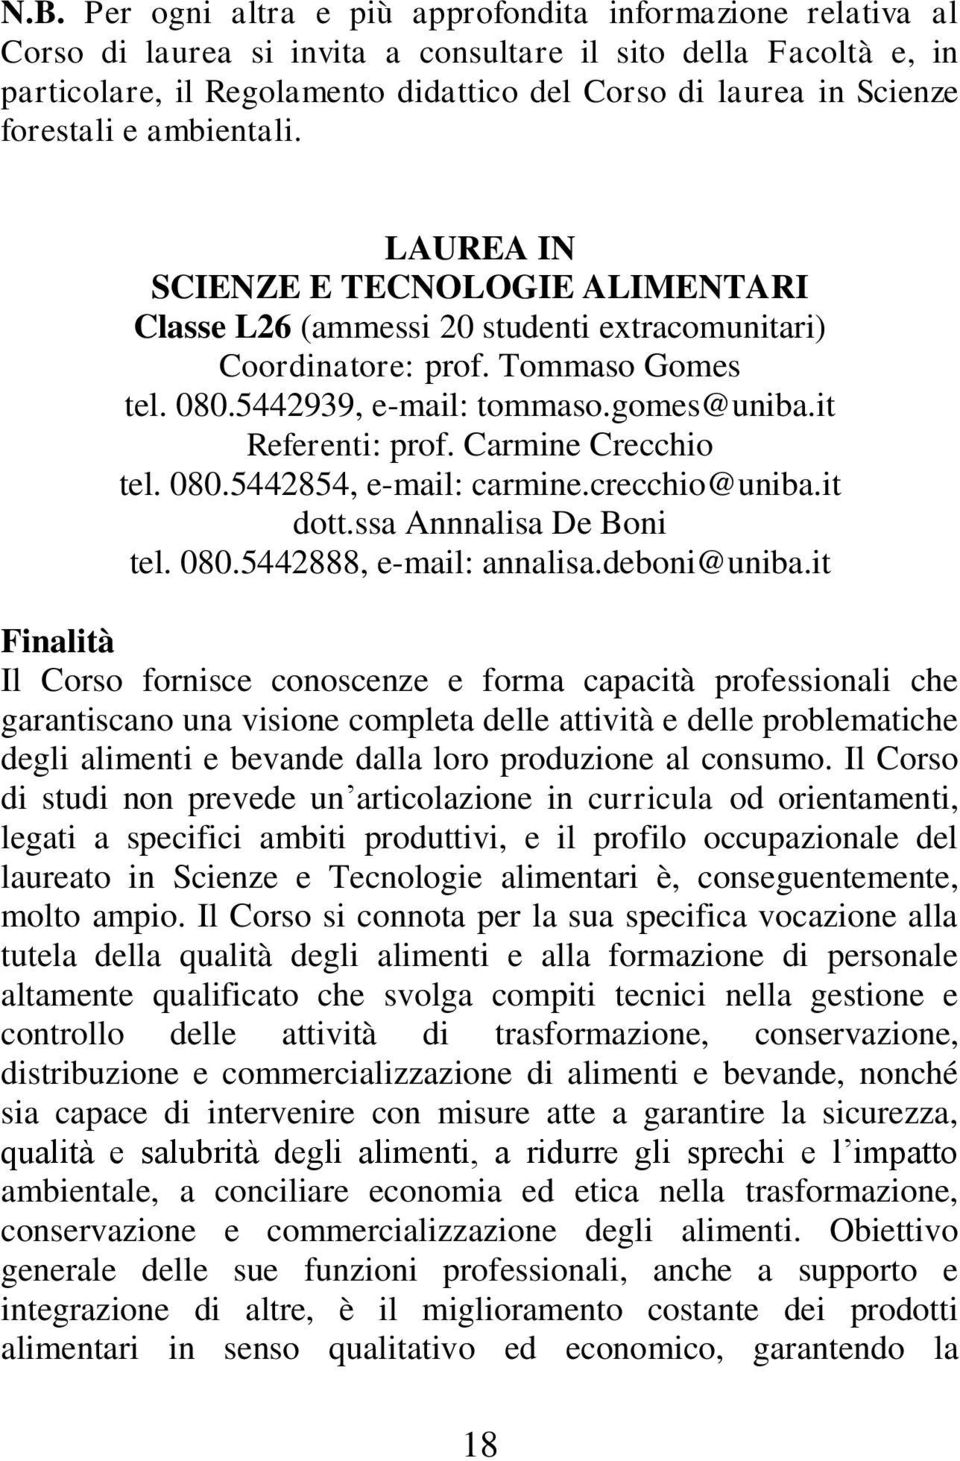 it Referenti: prof. Carmine Crecchio tel. 080.5442854, e-mail: carmine.crecchio@uniba.it dott.ssa Annnalisa De Boni tel. 080.5442888, e-mail: annalisa.deboni@uniba.